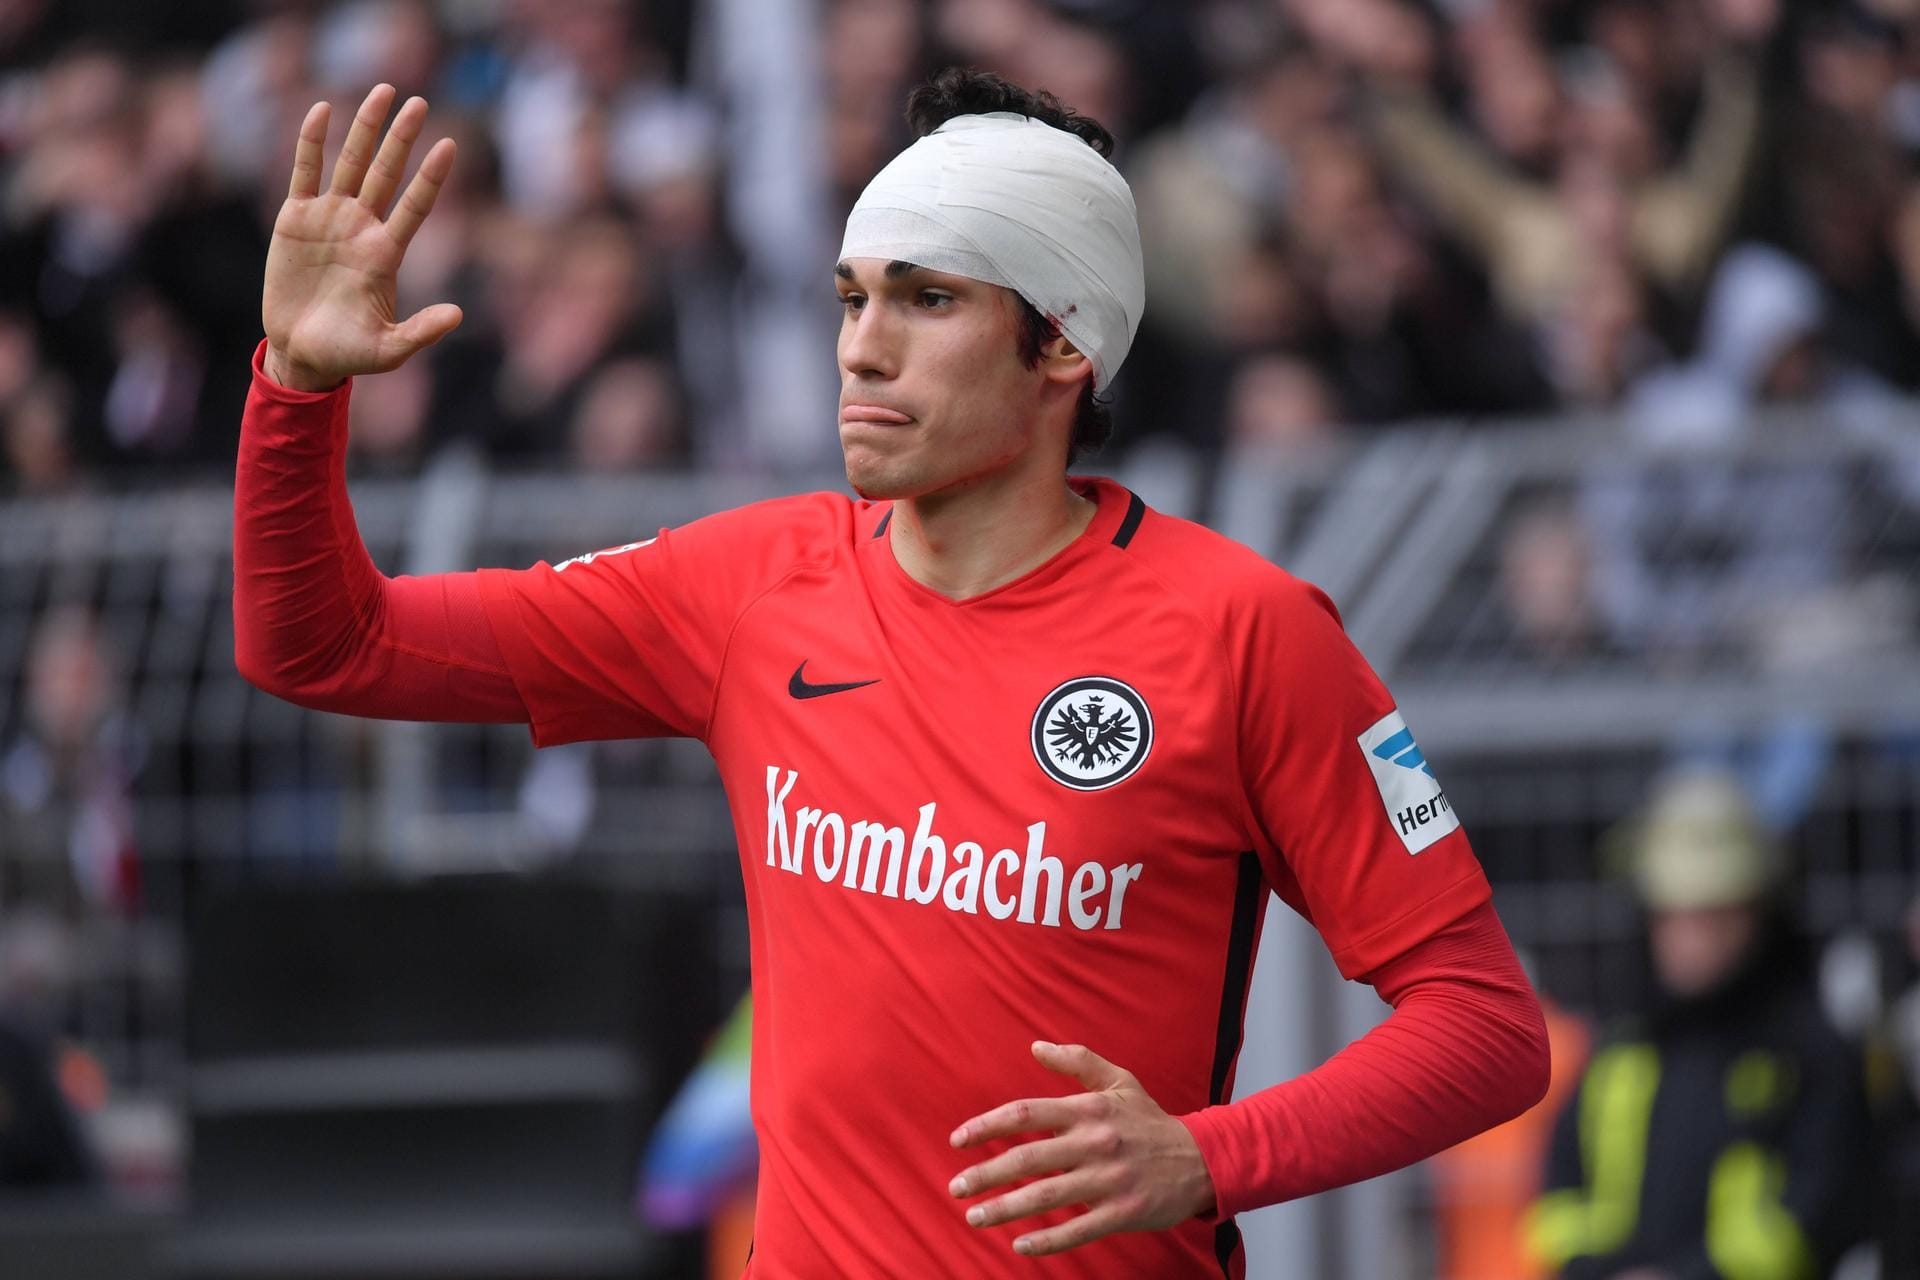 Abwehrspieler Jesus Vallejo hat das Leihgeschäft mit Eintracht Frankfurt gut getan. Sein Marktwert ist von drei auf acht Millionen gestiegen. Bekommt er nun eine Chance bei Real Madrid?